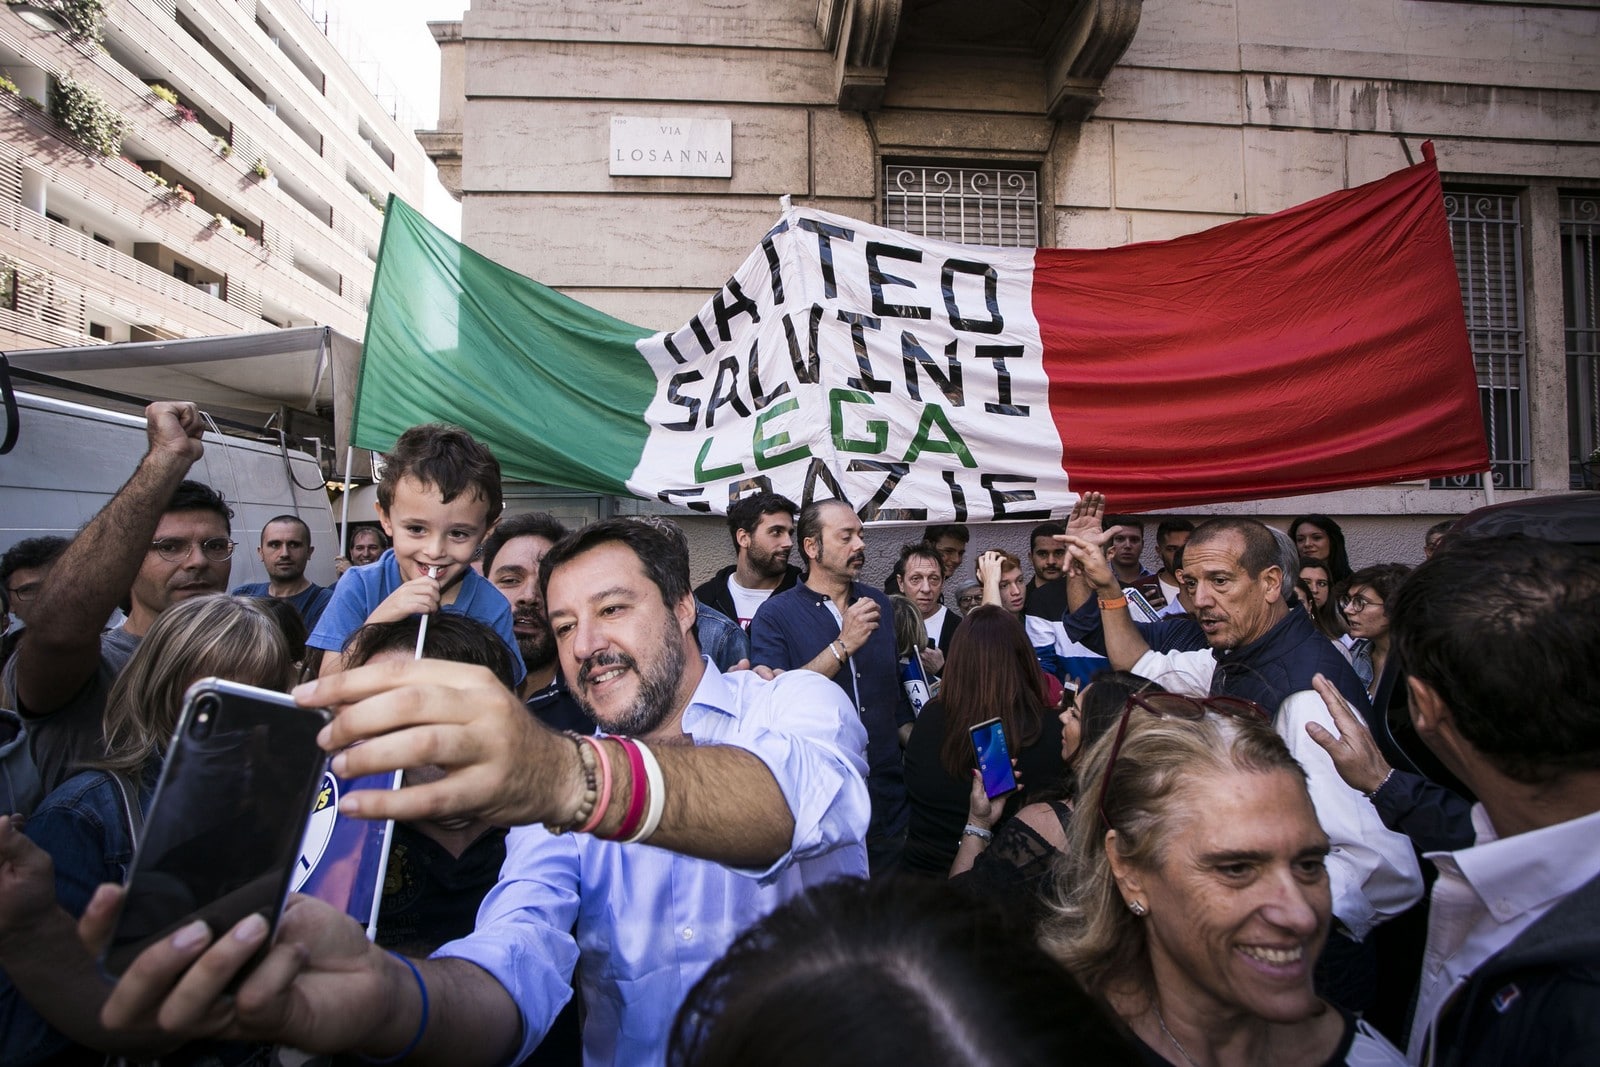 Rencontre entre Matteo Salvini et ses sympathisants au marché Via Fauchè,
Auteurs  : Stefano De Grandis/AGF/SIPA,
Numéro de reportage  : 00924549_000027.